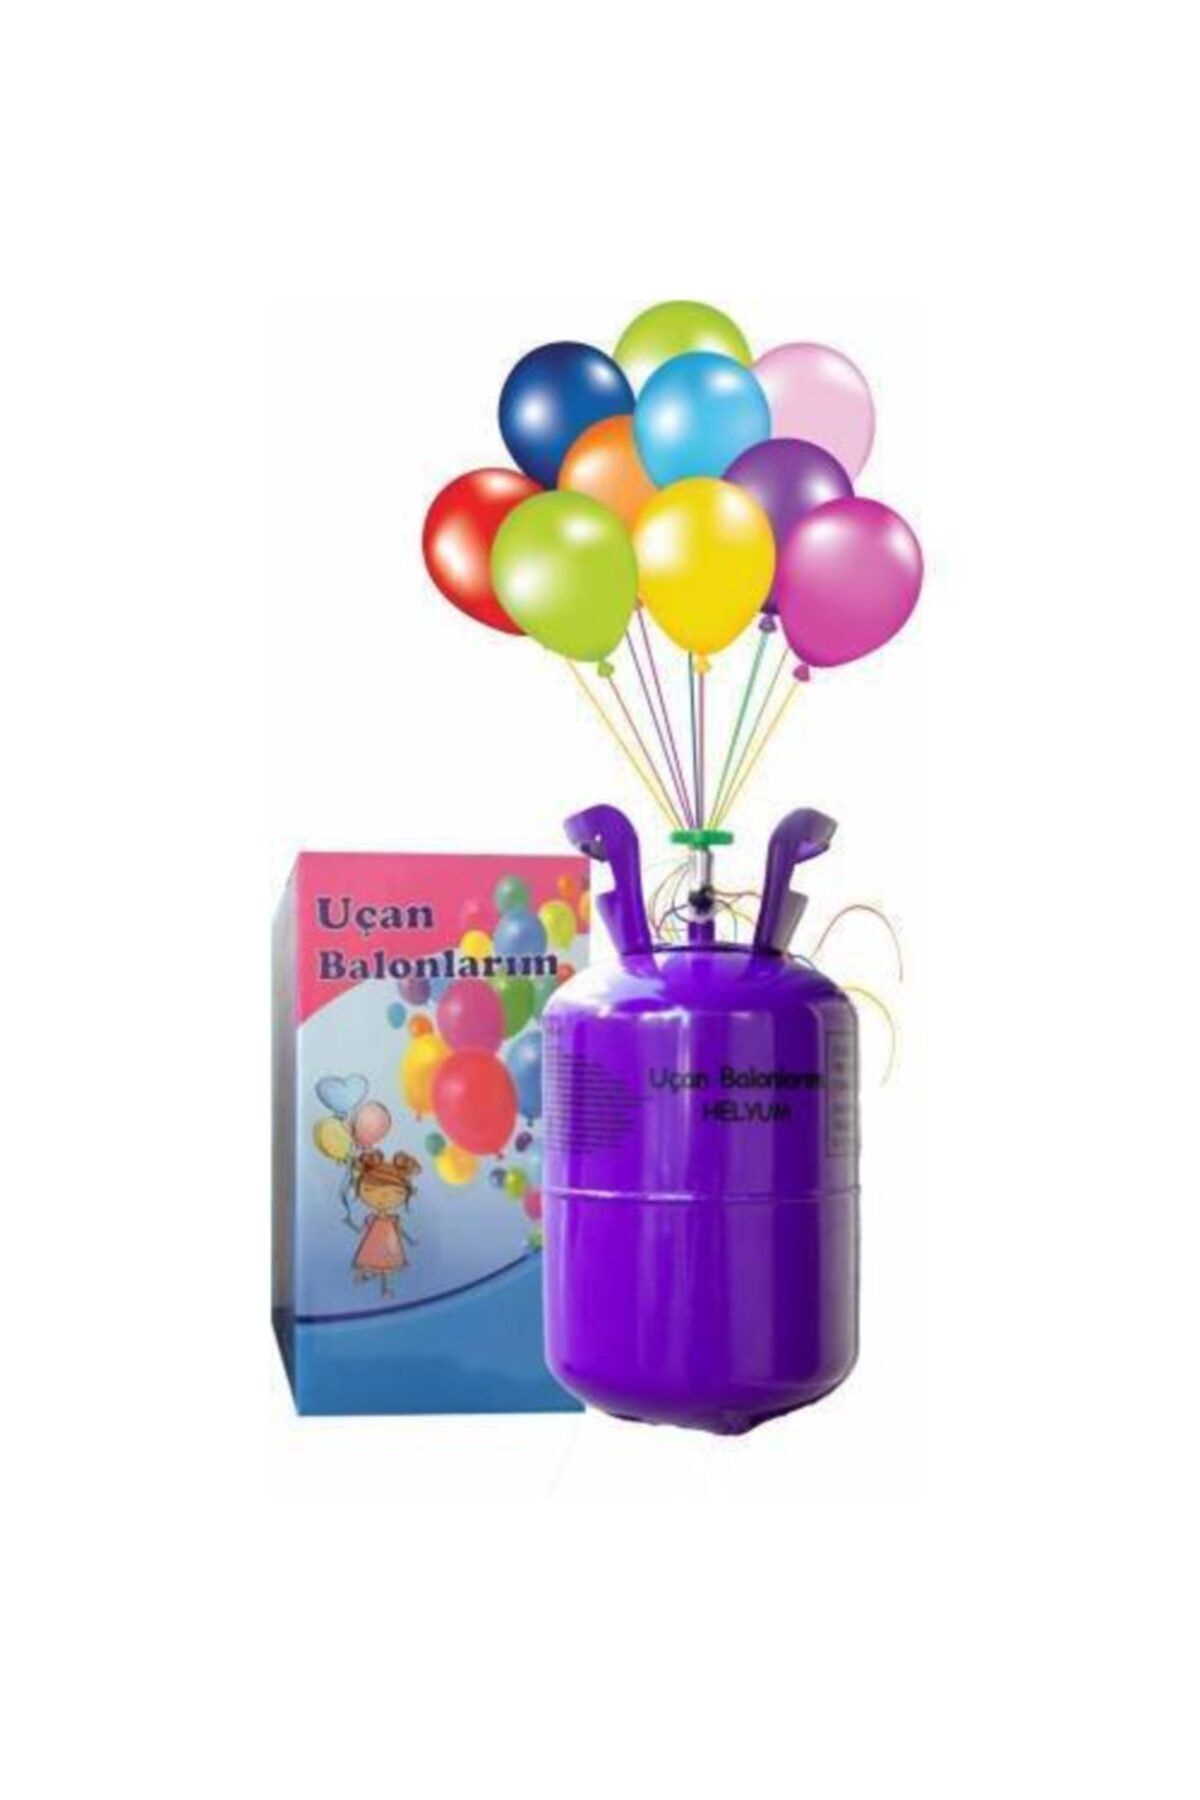 Mashotrend 7 Litre Helyum Gazı - Ses Değiştirici Uçan Balon Helyum Tüpü + 15 Balon + Ip Hediye - Kullan At Tüp